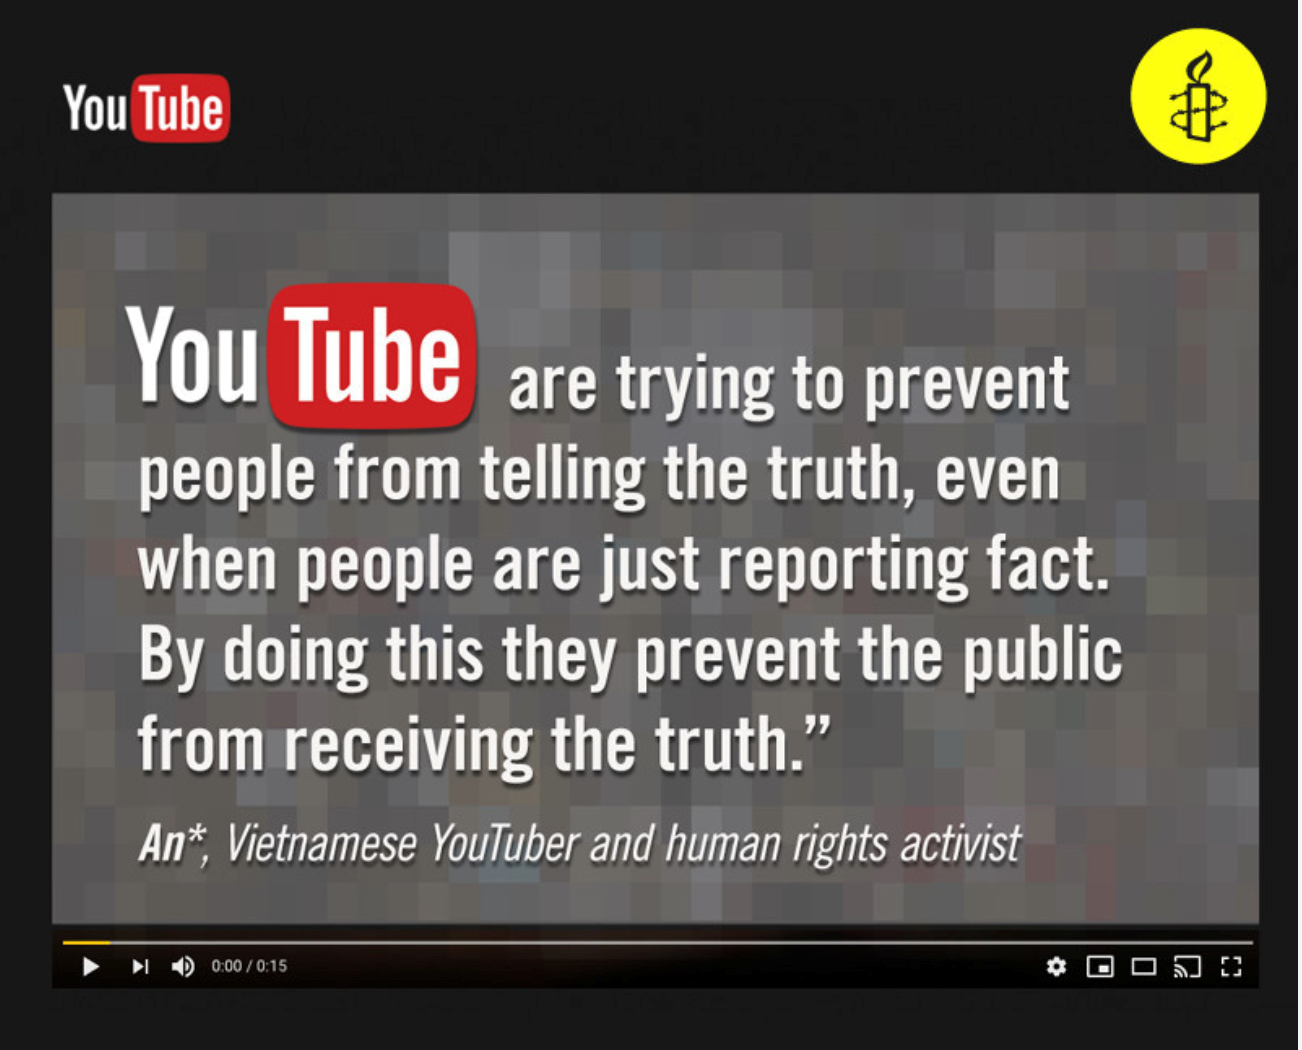 越南Youtuber和人權行動者An*:「YouTube試圖阻止人們說真話，即 使人們只是報導真相......他們不讓公眾知道真相」